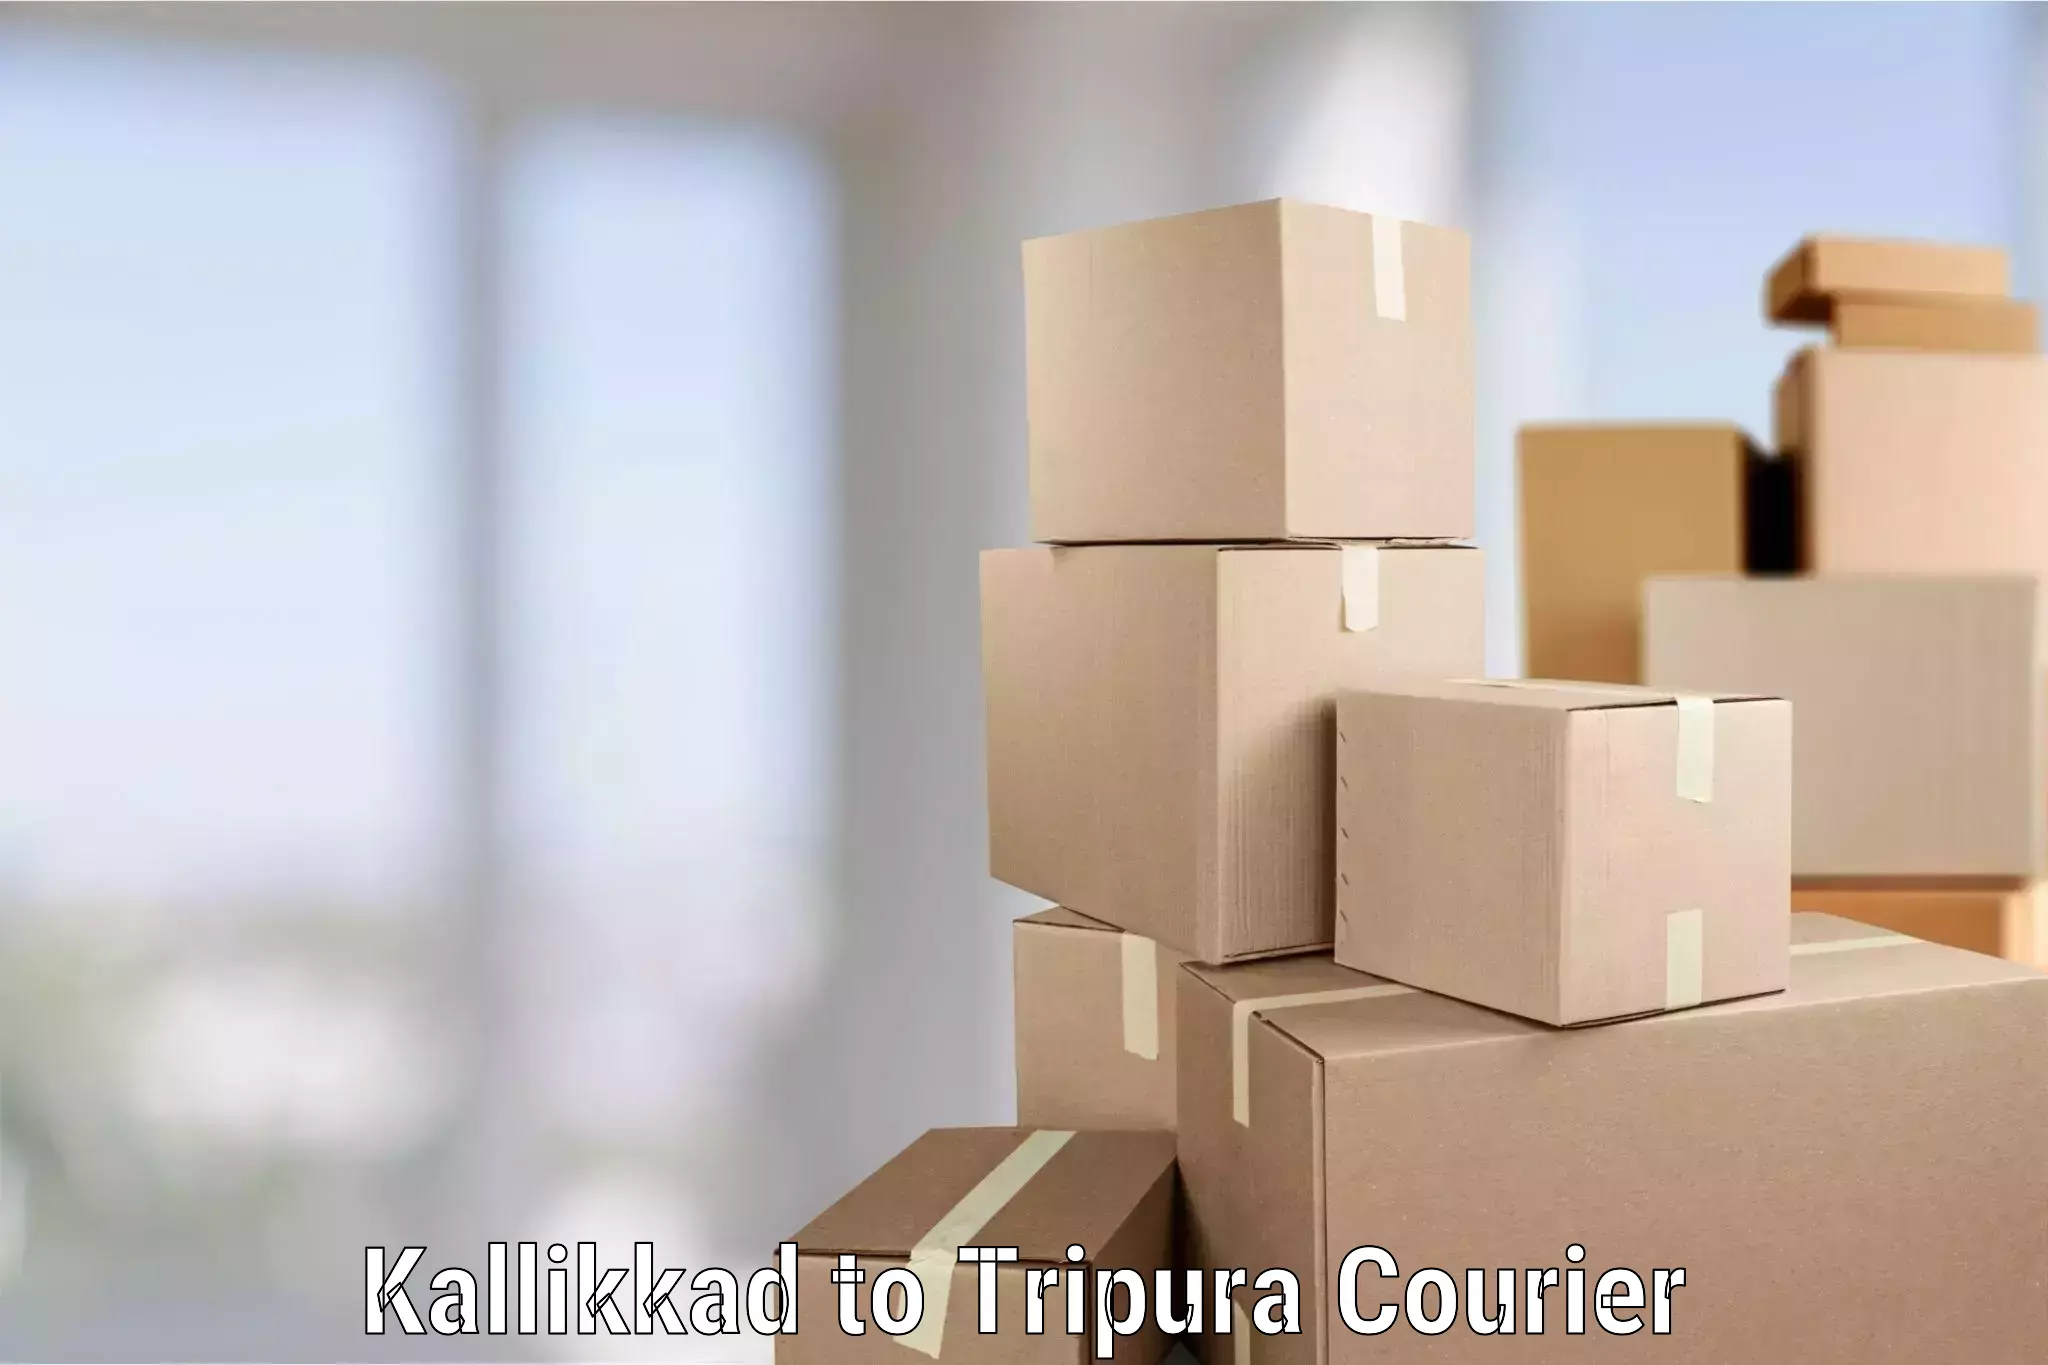 Trusted furniture movers Kallikkad to Sonamura